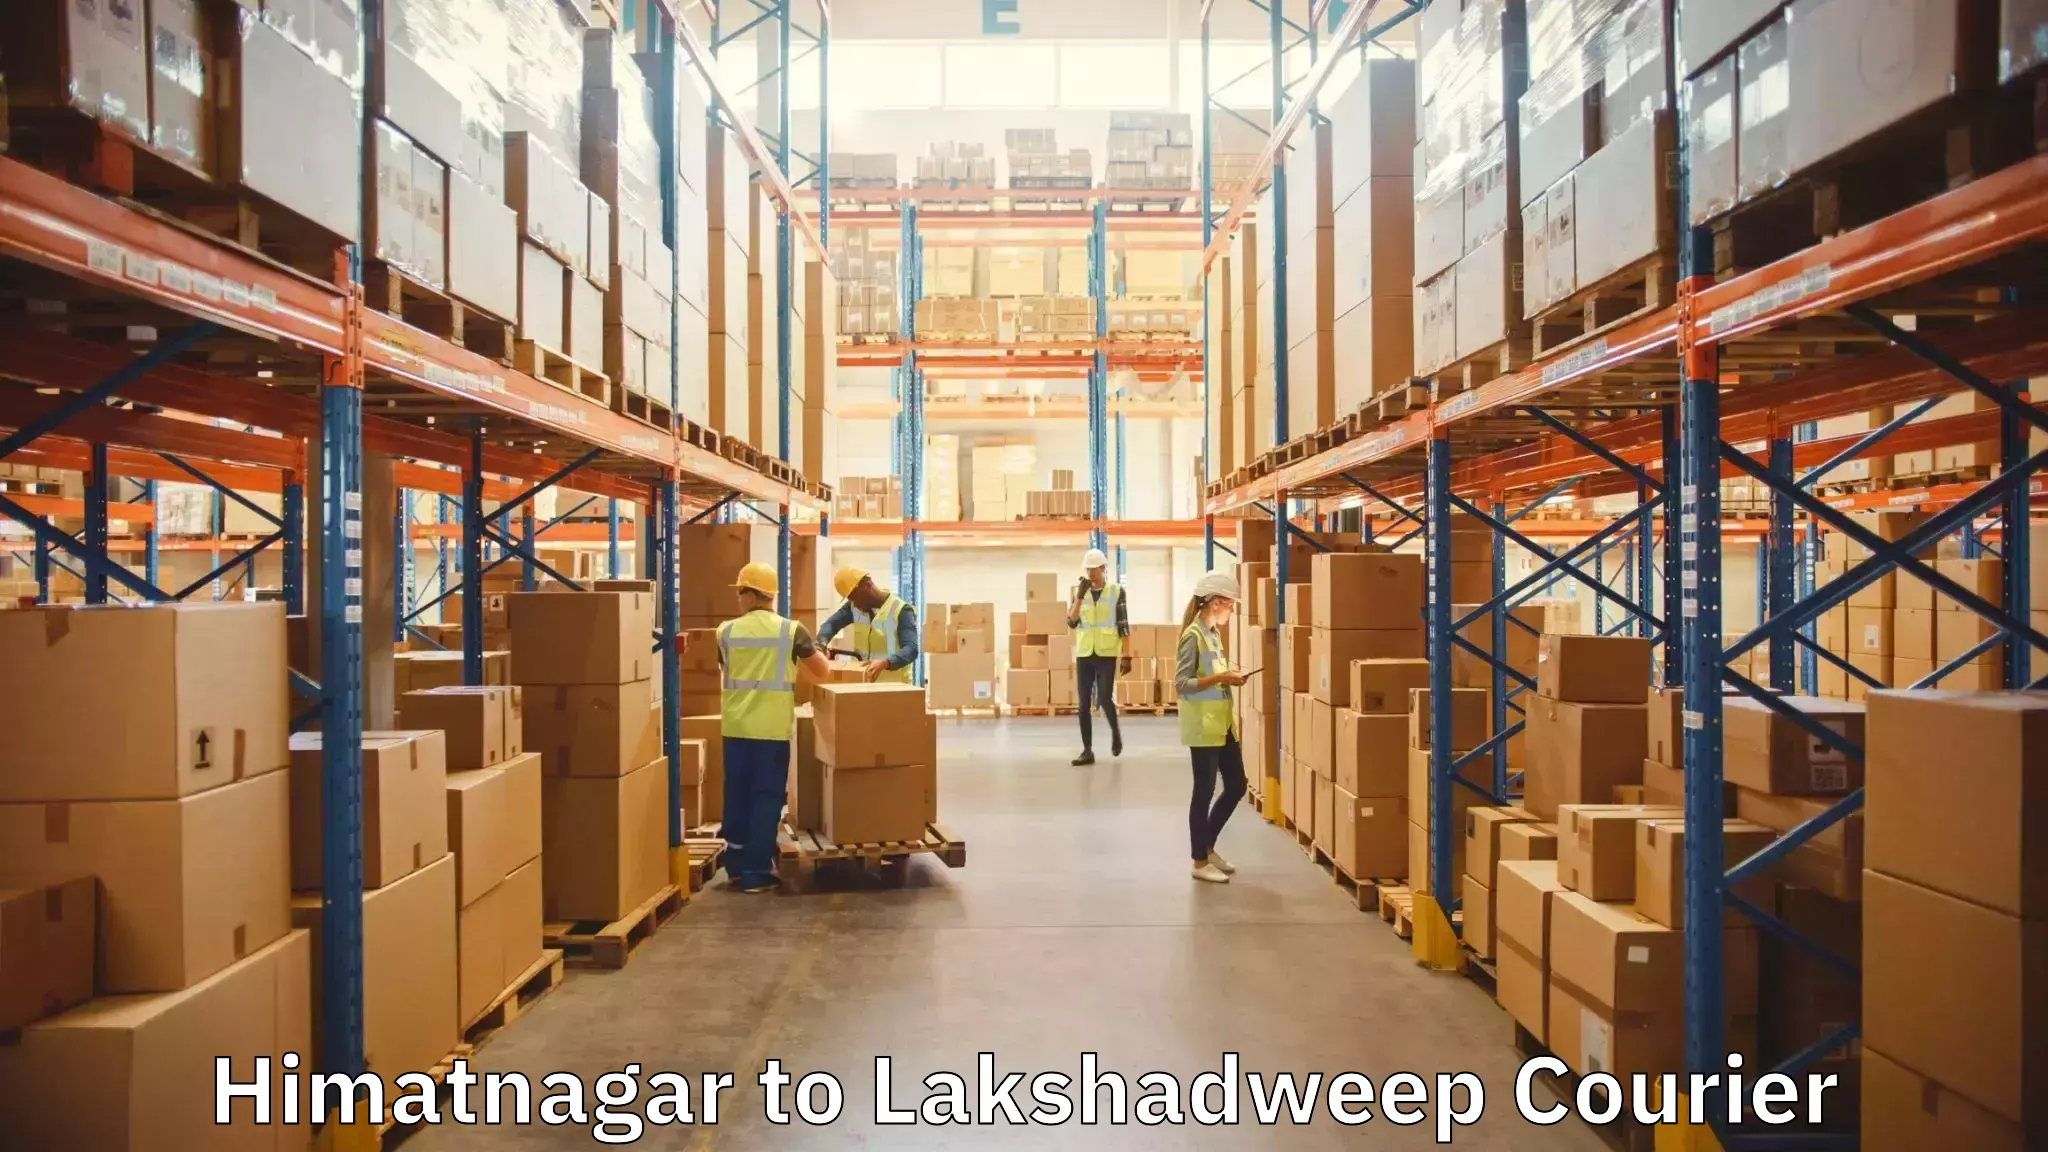 Quality moving services Himatnagar to Lakshadweep